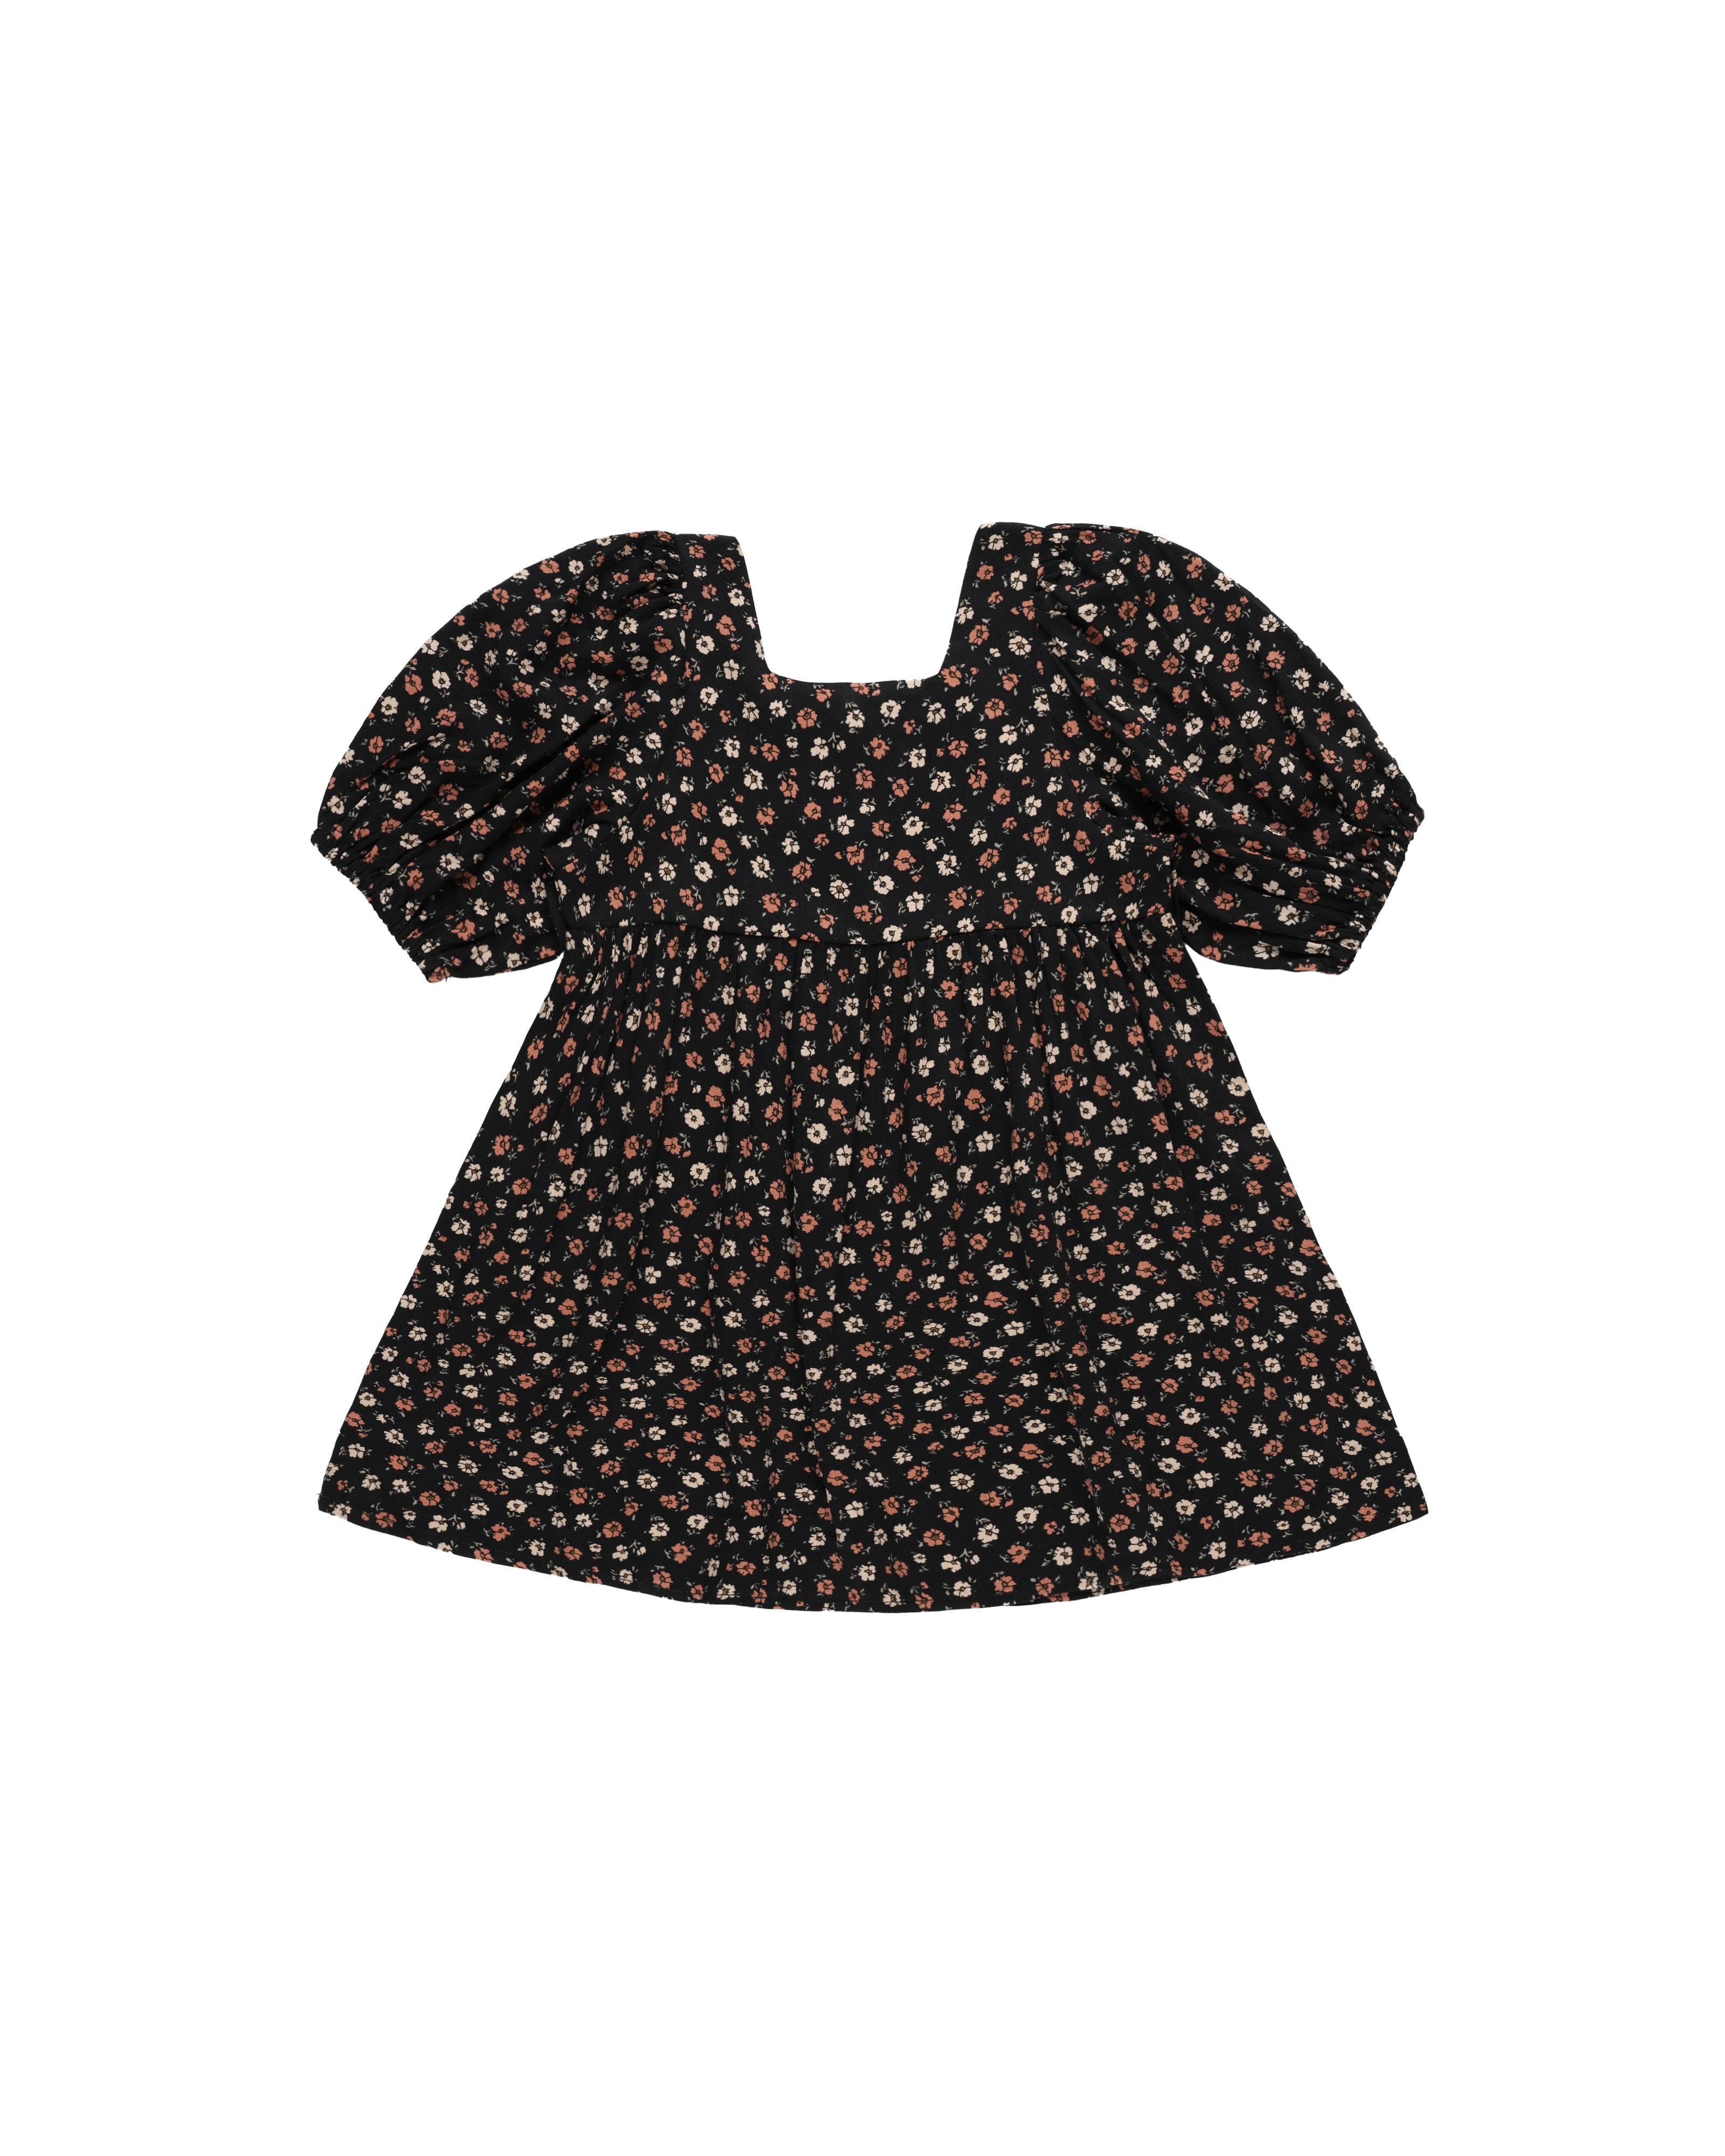 Gretta Babydoll Dress || Dark Floral - LAST ONE 8/9Y